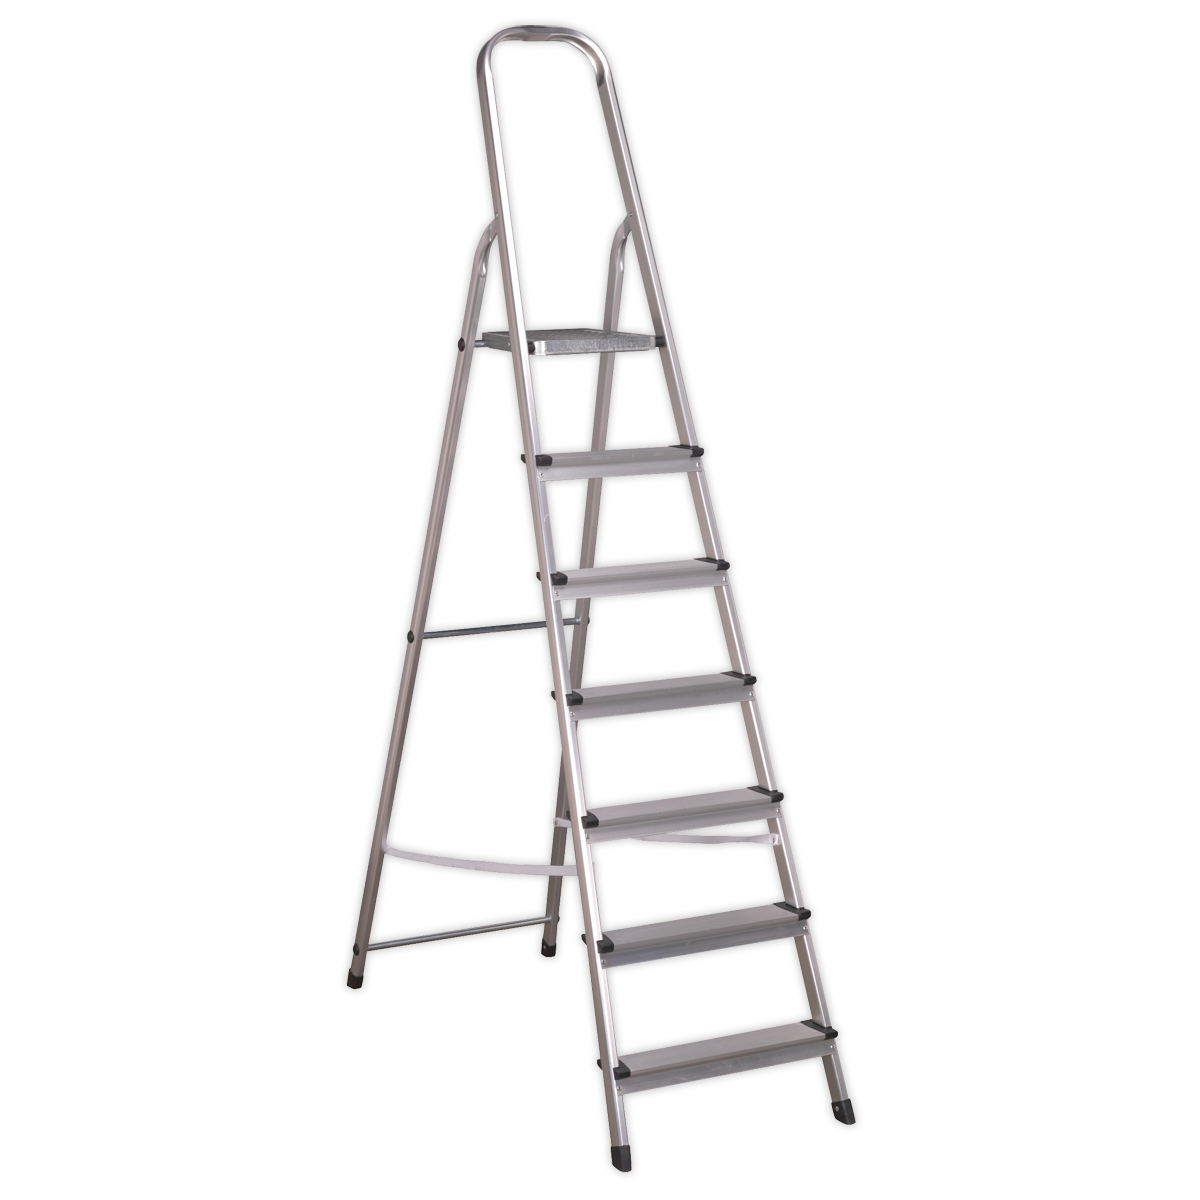 Aluminium Step Ladder 7-Tread EN 131